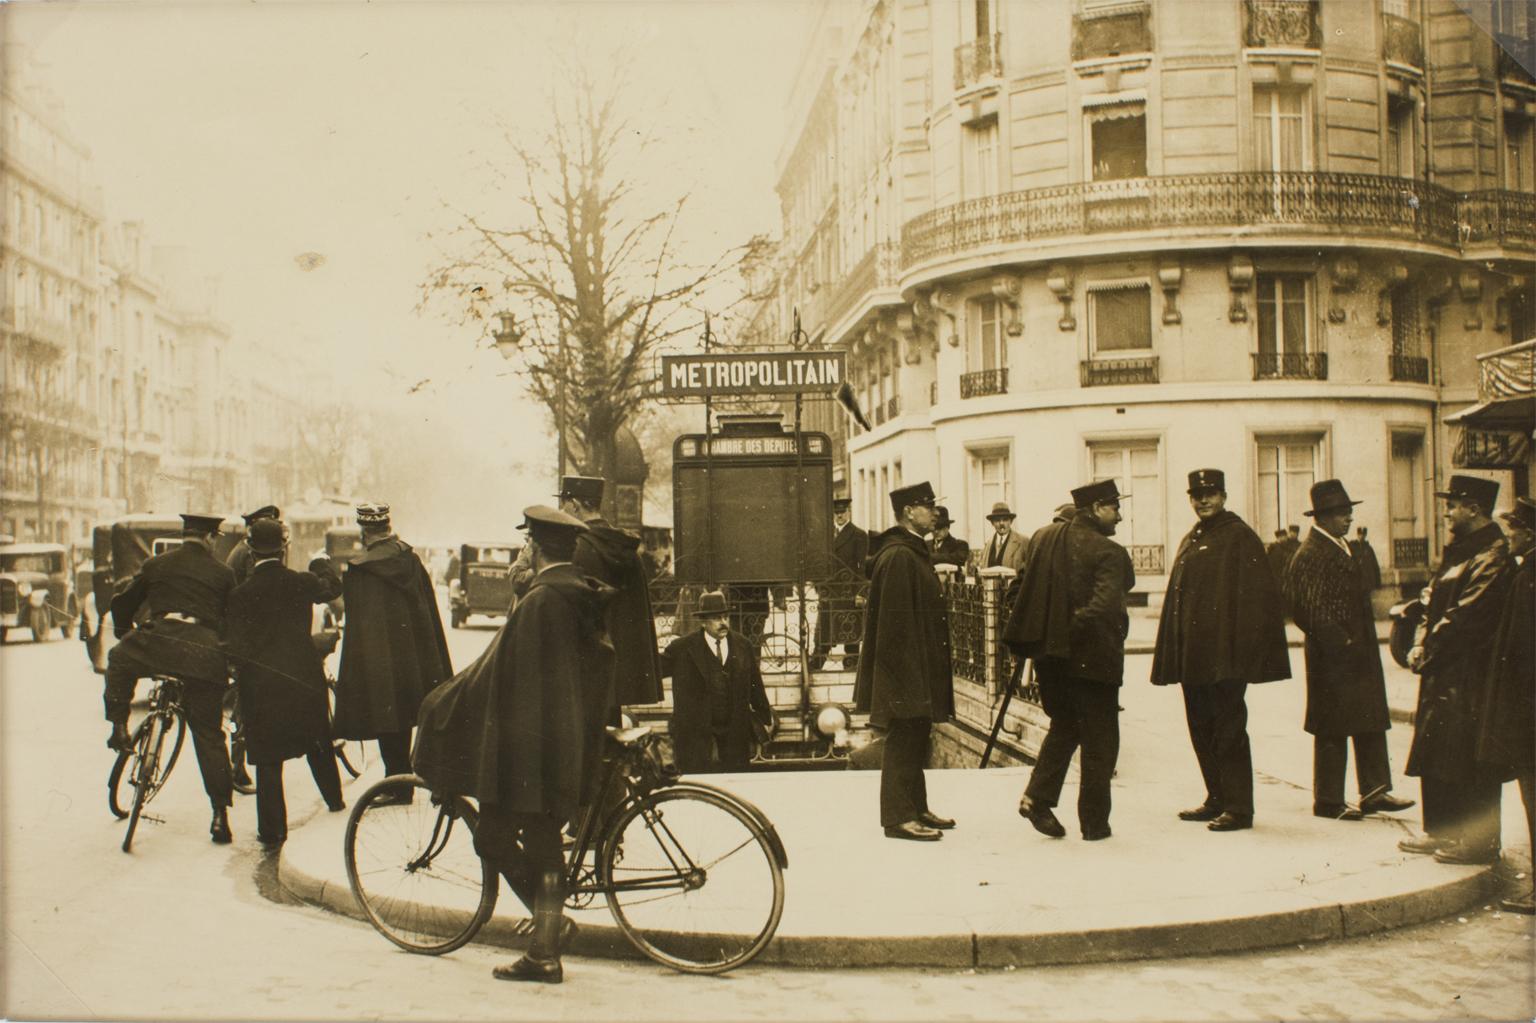 Polizisten in Paris, um 1930 – Silber-Gelatine-Schwarz-Weiß-Fotografie